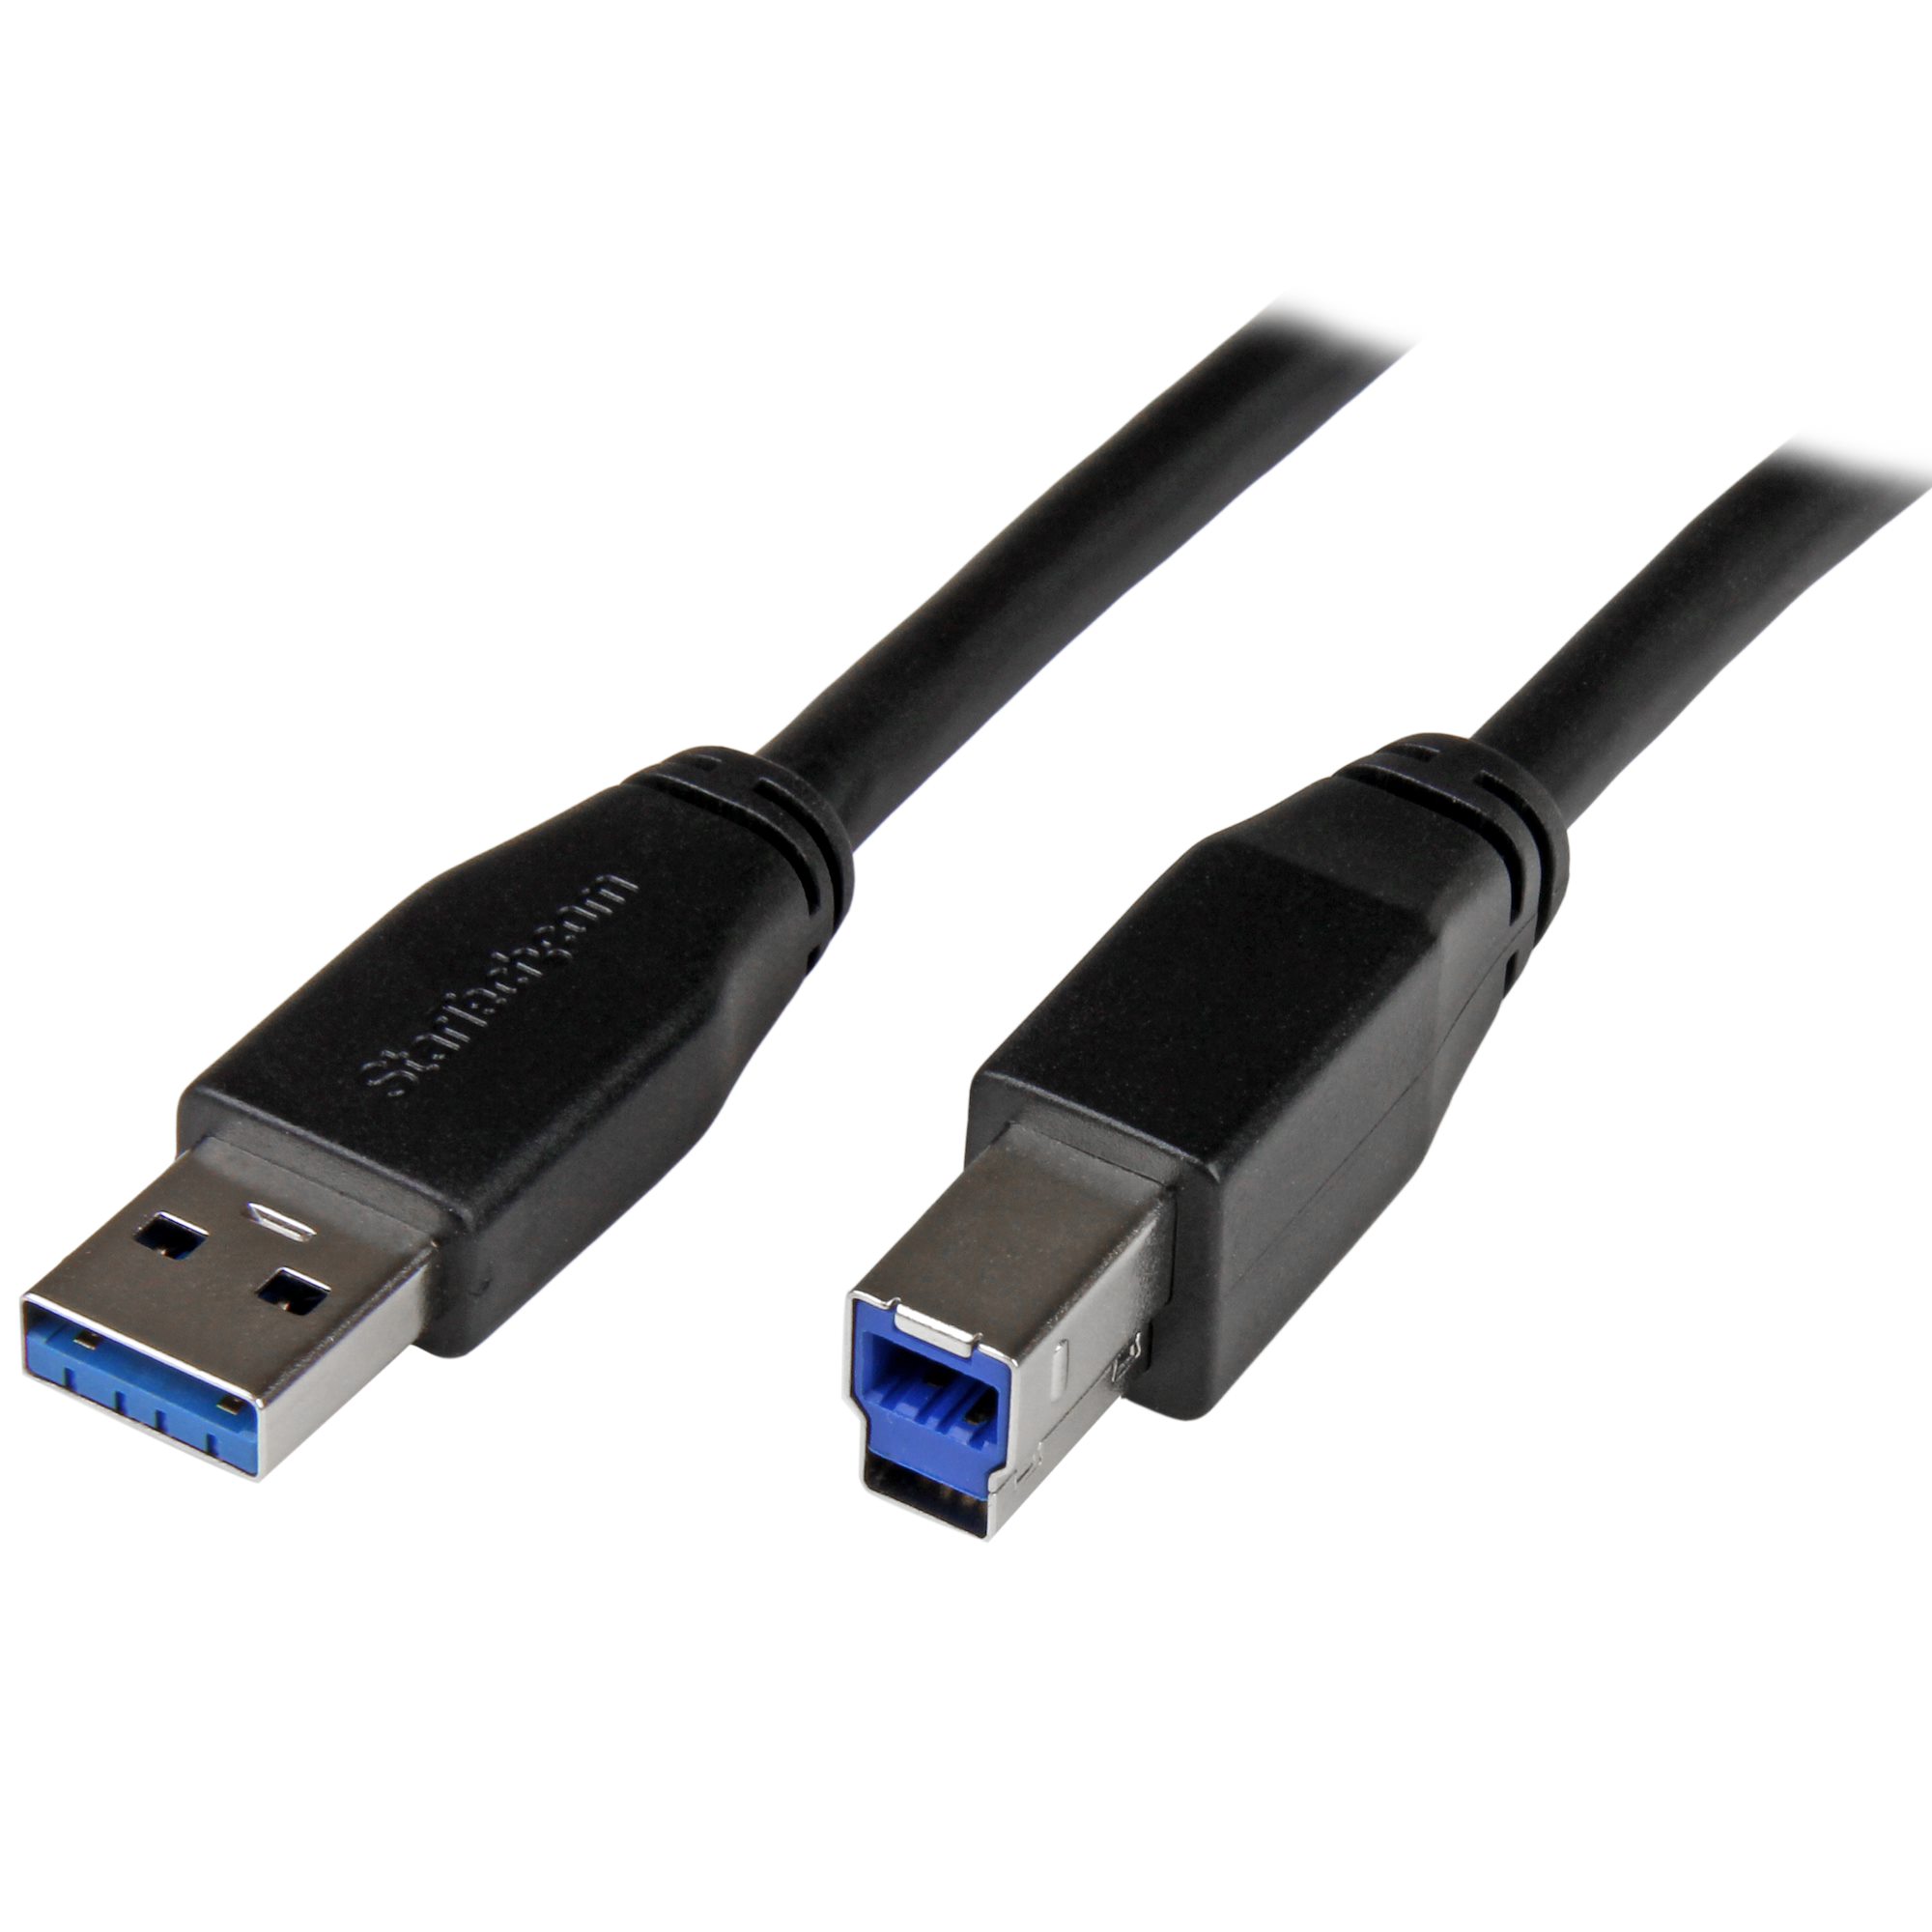 Active USB 3.0 USB-A to USB-B Cable - M/M - 5m (15ft) - BCI Imaging Supplies